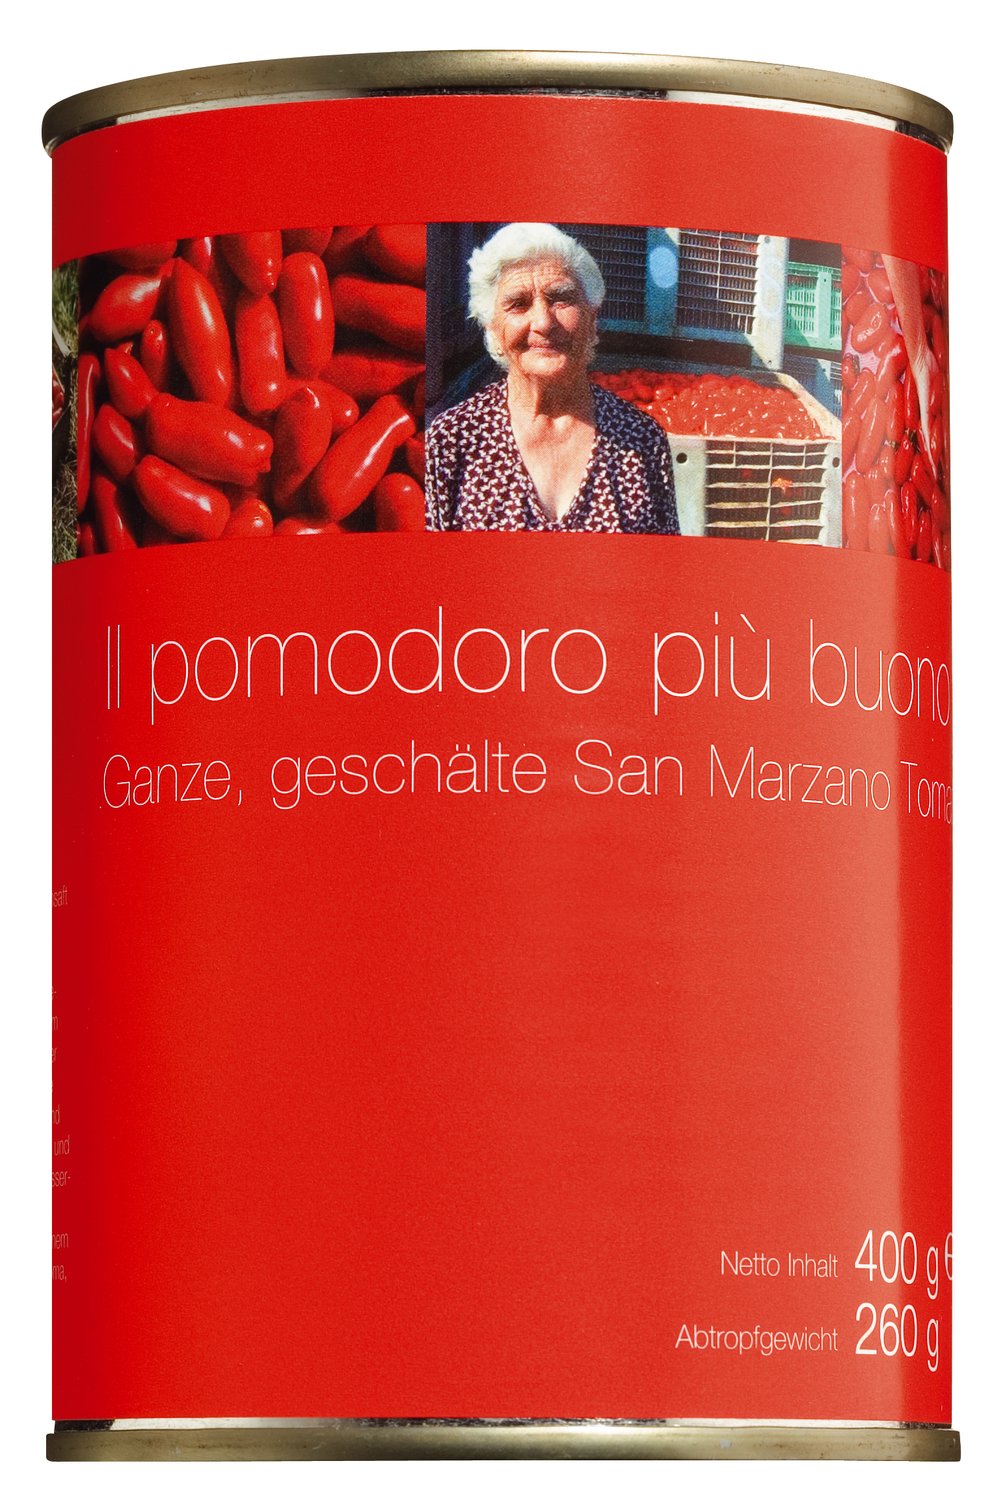 San Marzano Tomaten - ganze geschälte Tomaten, 400 g